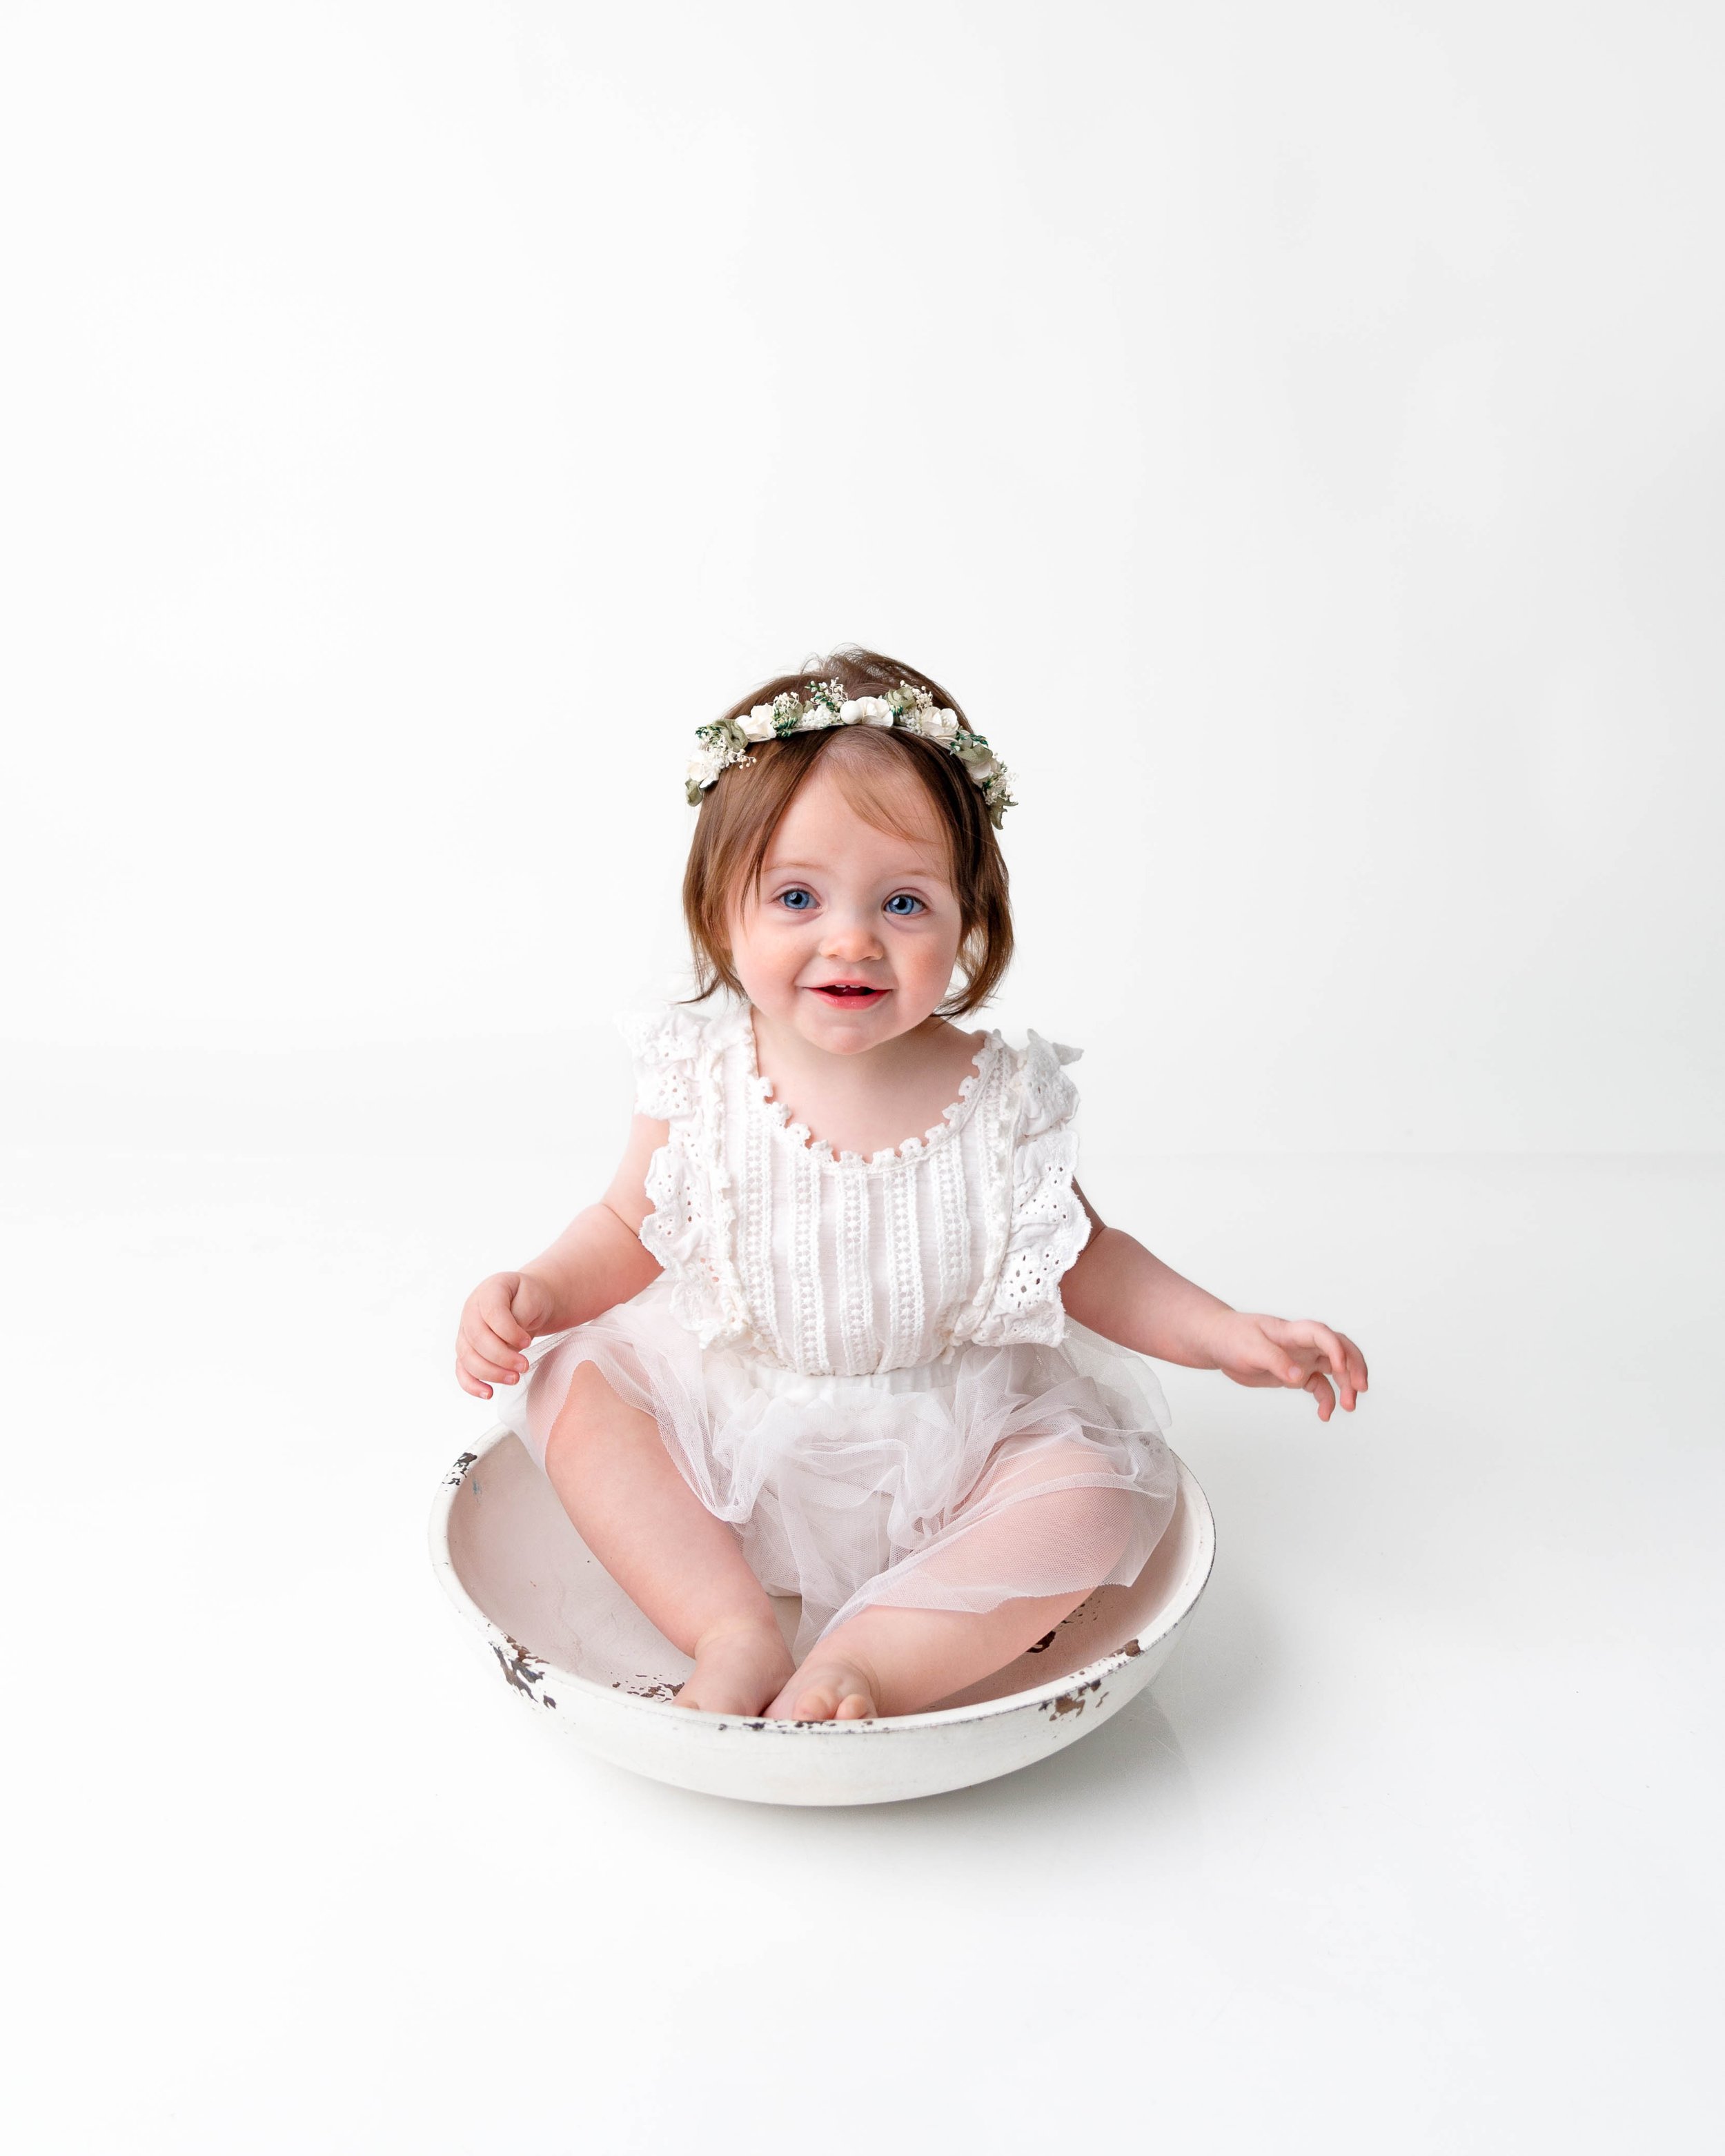 Cake-smash-one-year-old-photos-milestone-images-newborn-photography-baby-girl-spokane-washington.jpg